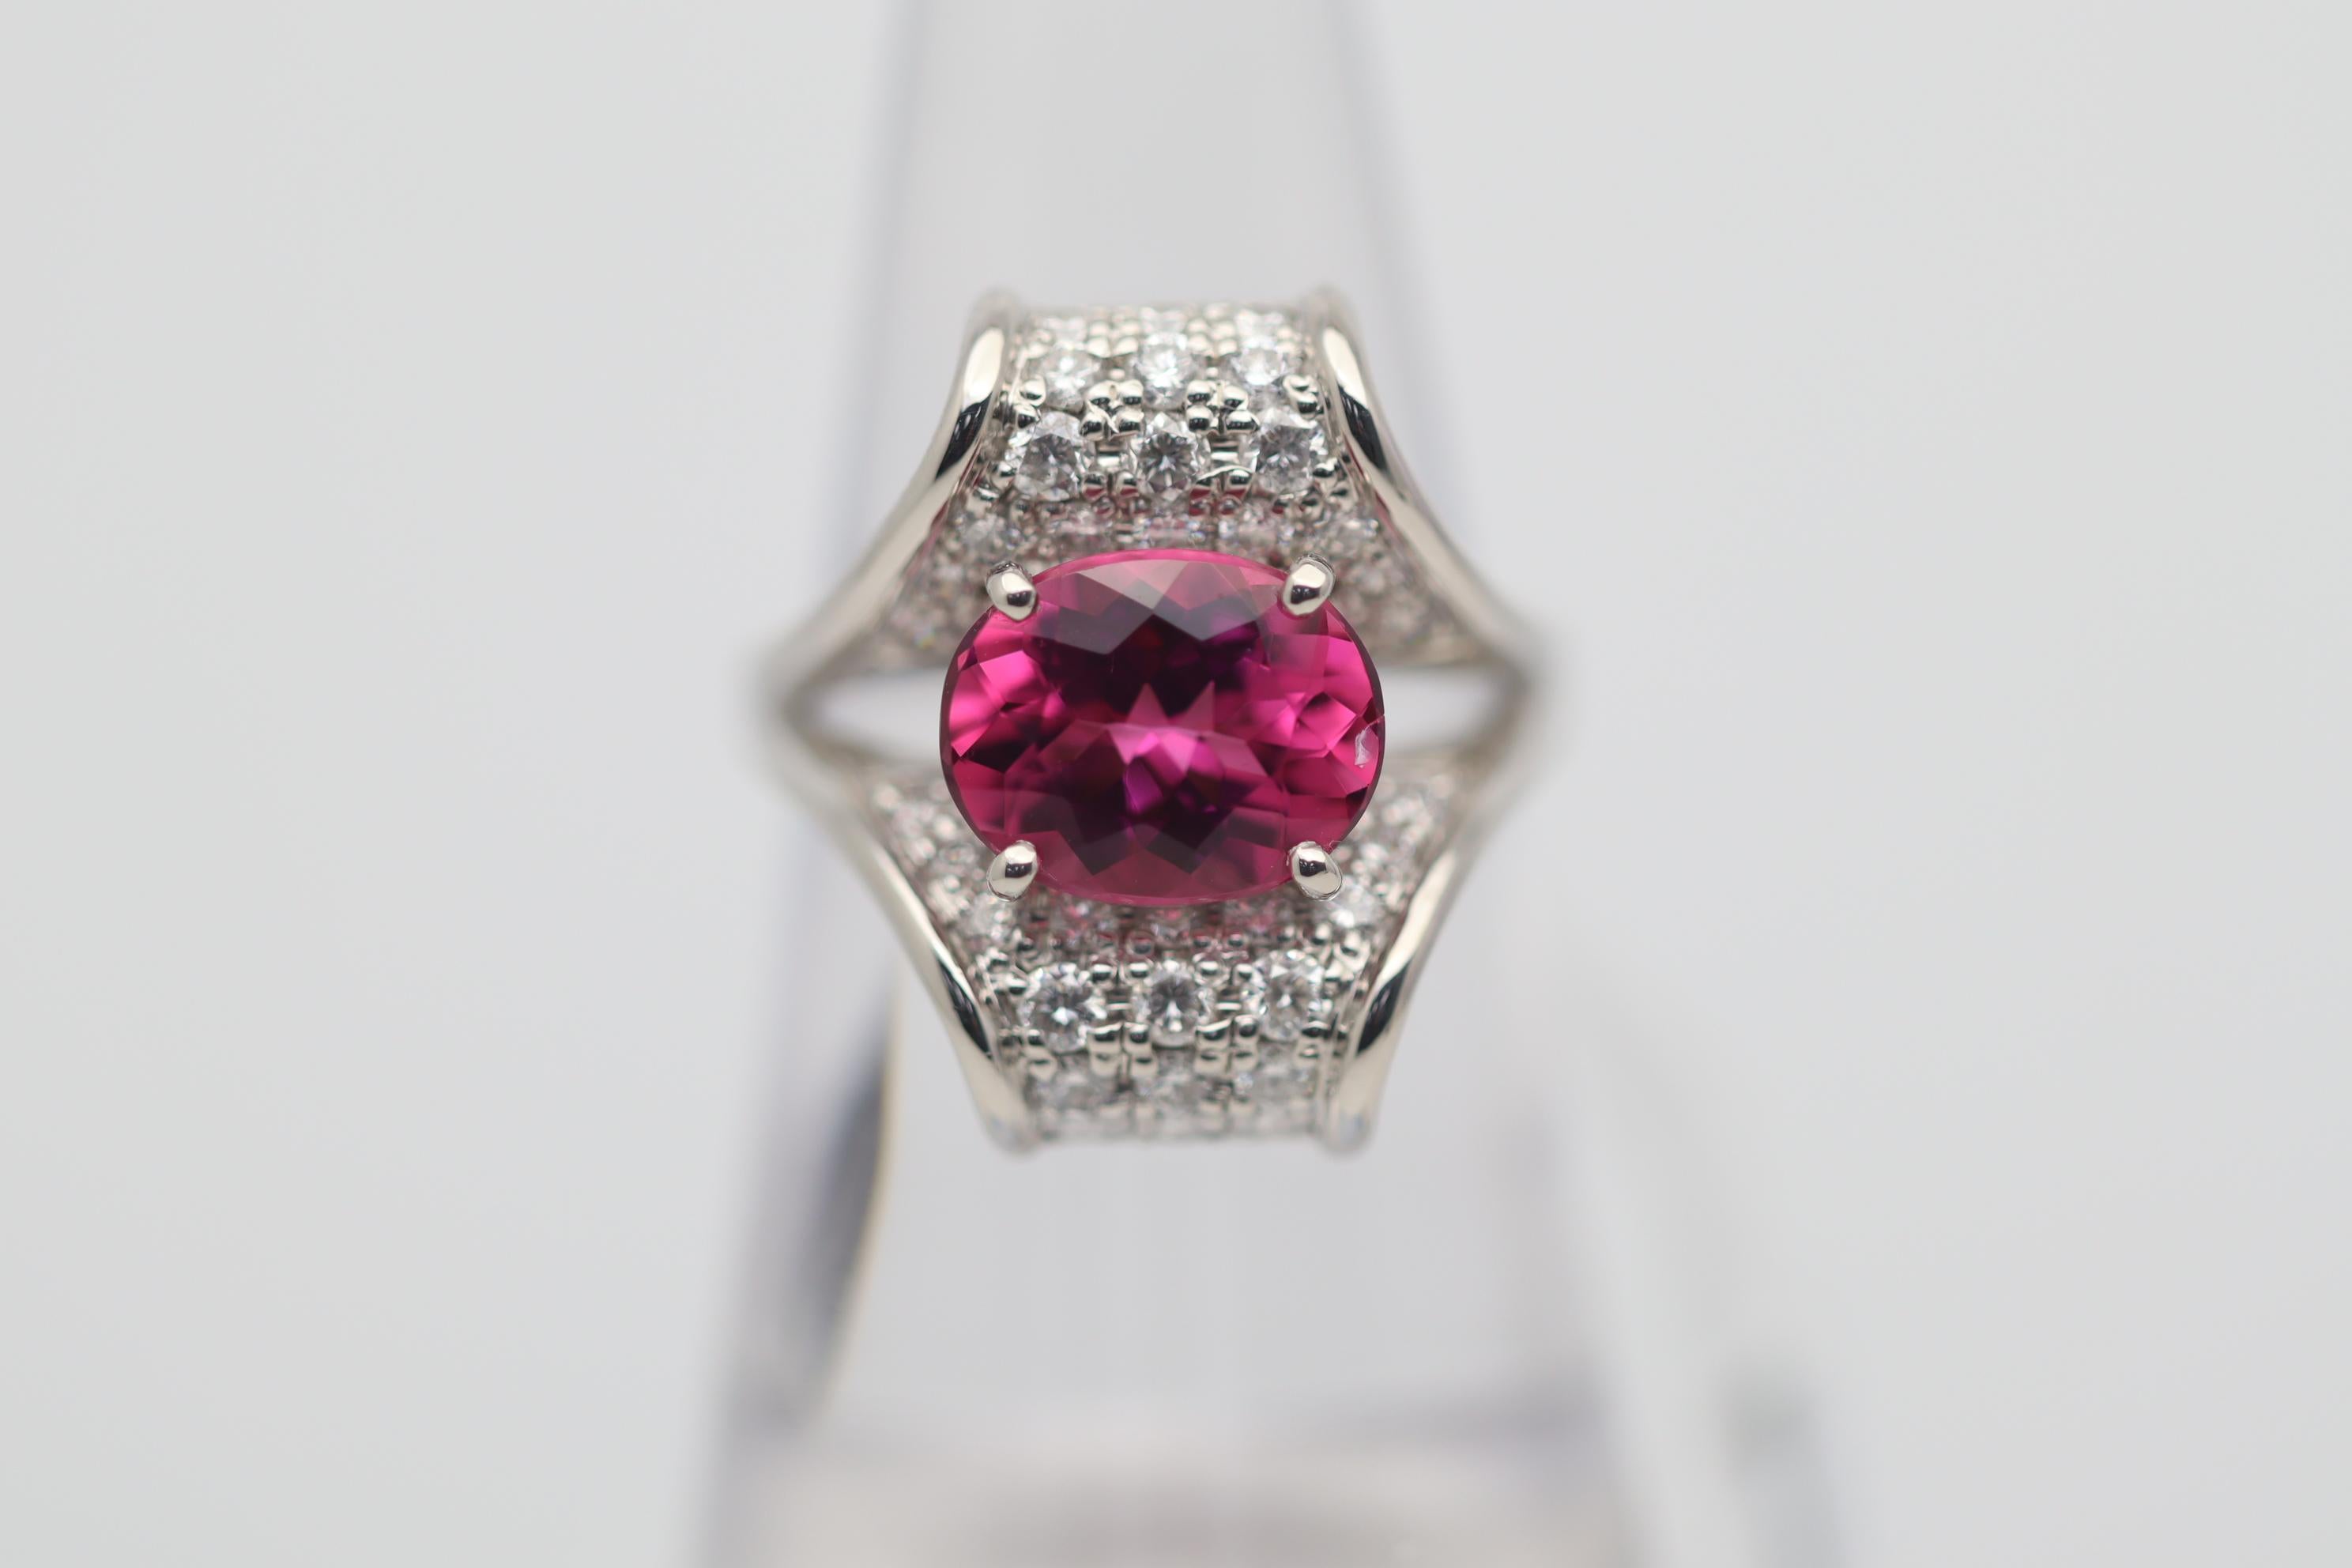 Ein süßer und saftiger Rubellit-Turmalin steht im Mittelpunkt! Er hat eine leuchtende, lebhafte rosa-rote Farbe und wiegt 2,49 Karat. Ergänzt wird er durch 0,96 Karat runde Diamanten im Brillantschliff, die dem Ring zusätzlichen Glanz und Brillanz